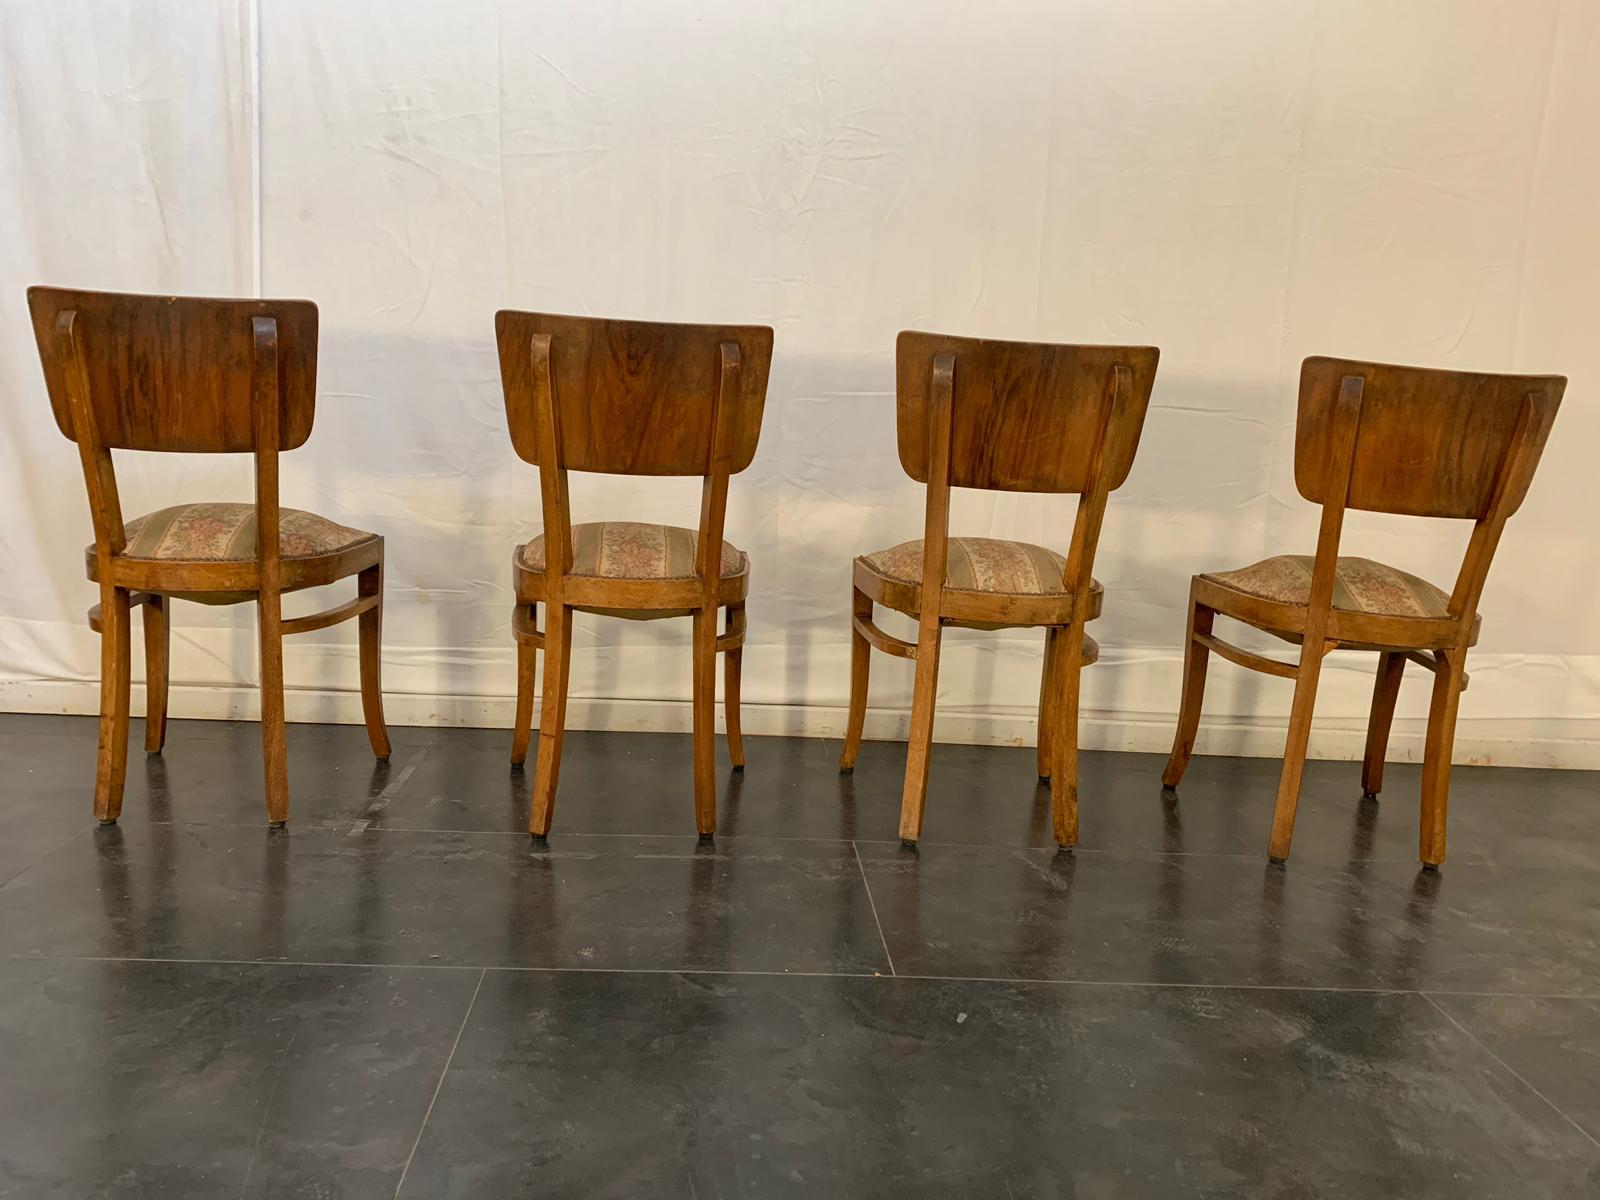 4 chaises Art Déco en bois de rose. Légère usure due à l'âge et à l'utilisation. Le remplacement de la sellerie est recommandé. Patine d'âge et d'utilisation.
L'emballage avec du papier bulle et des boîtes en carton est inclus. Si un emballage en